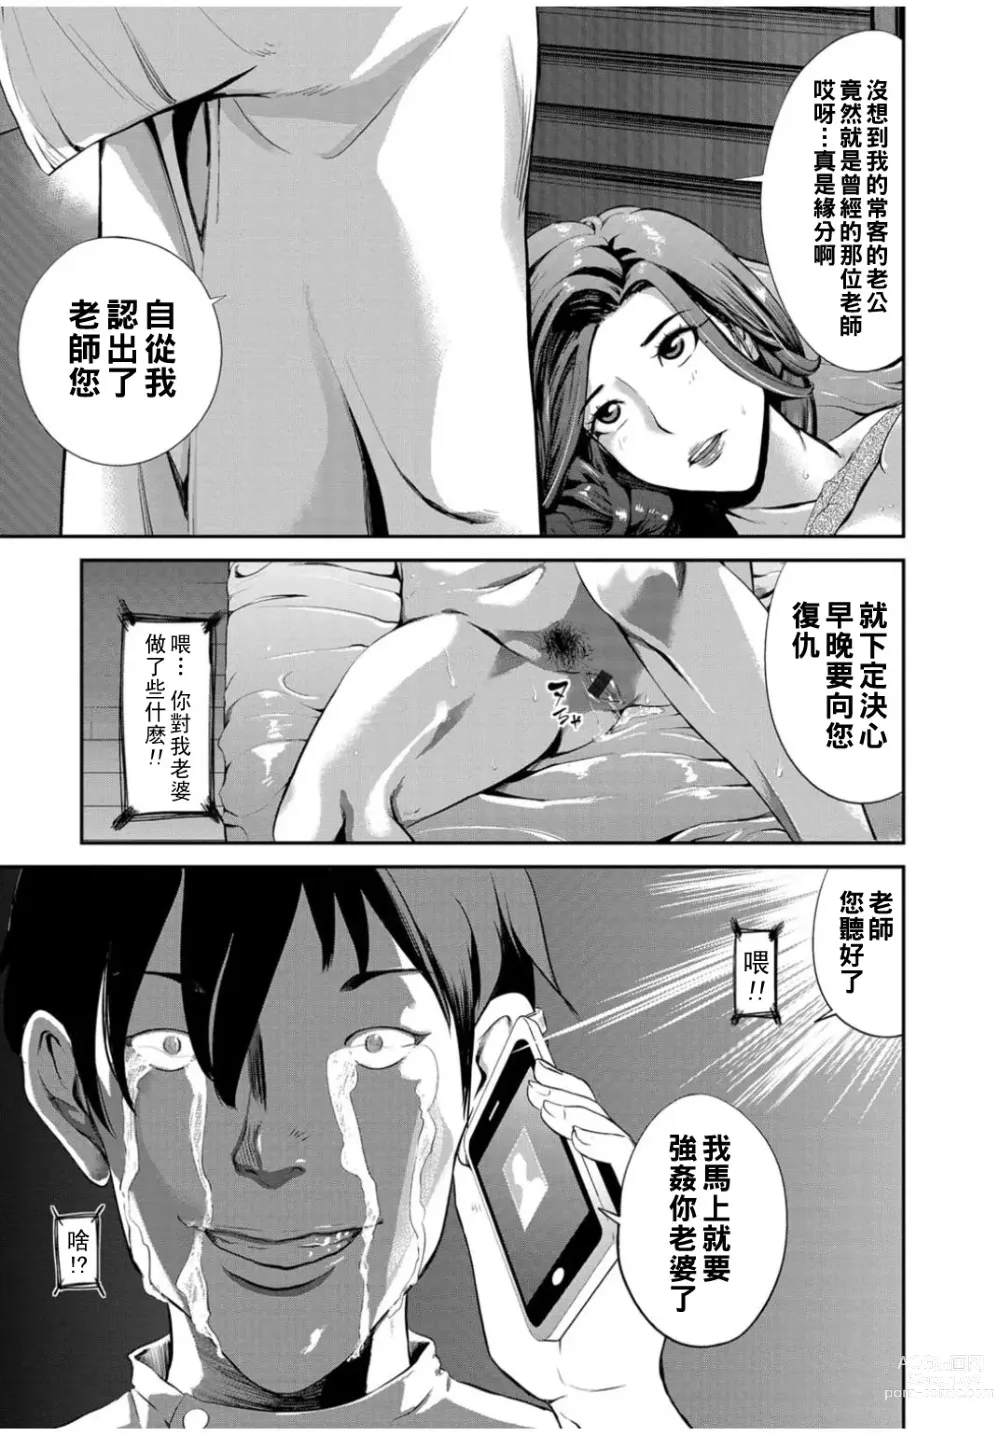 Page 13 of manga Hiniku Massage - Sensual Massage